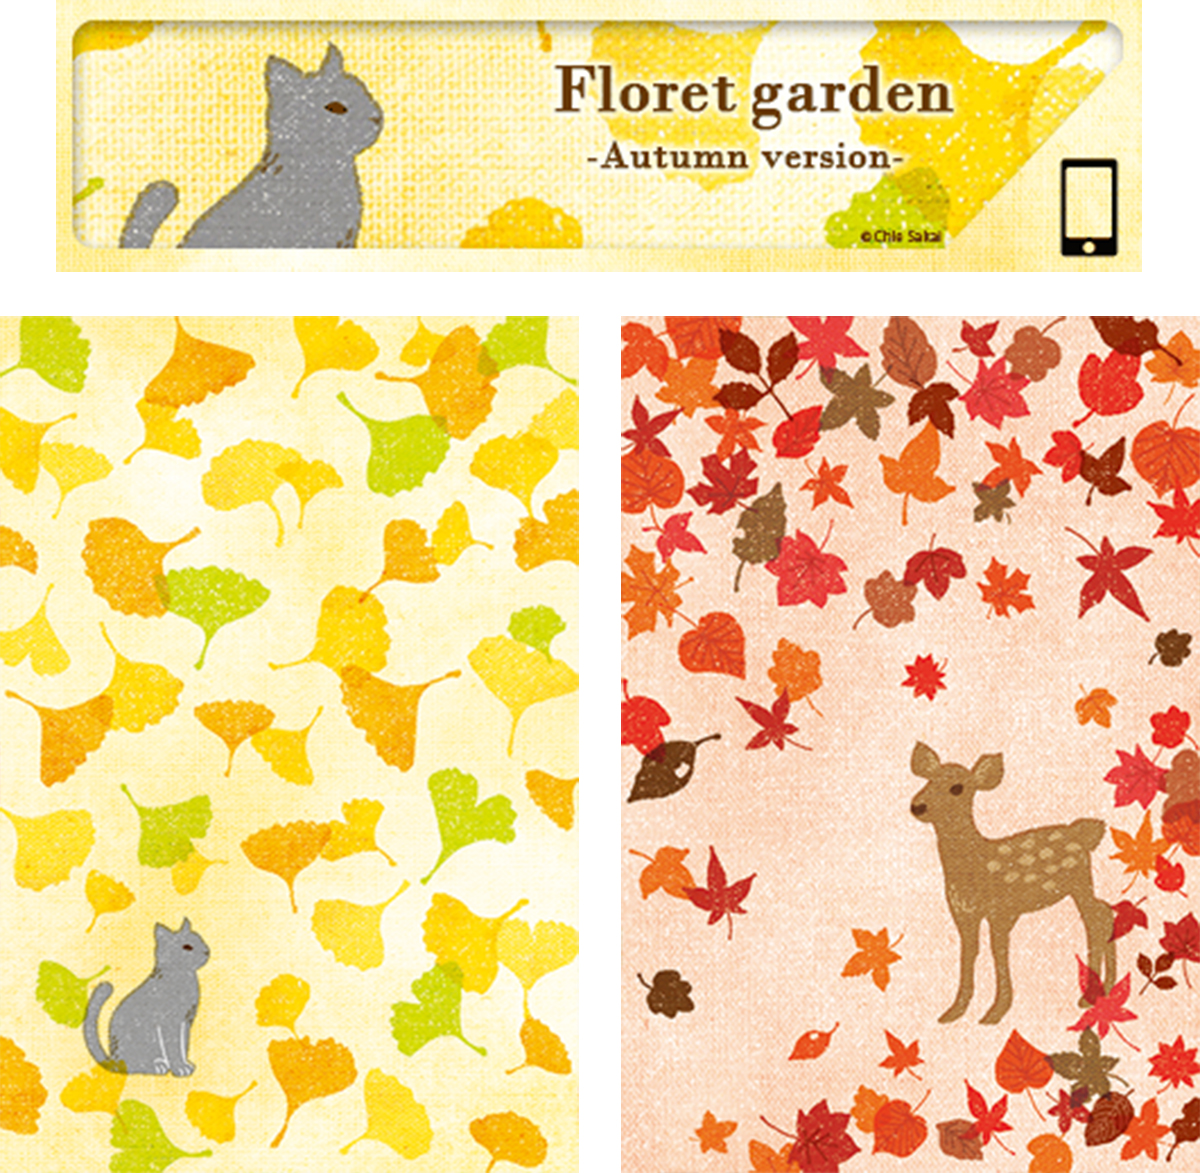 きせかえサイト Playtoys
きせかえコンテンツ用イラストレーション
『Floret garden -Autumn version-』